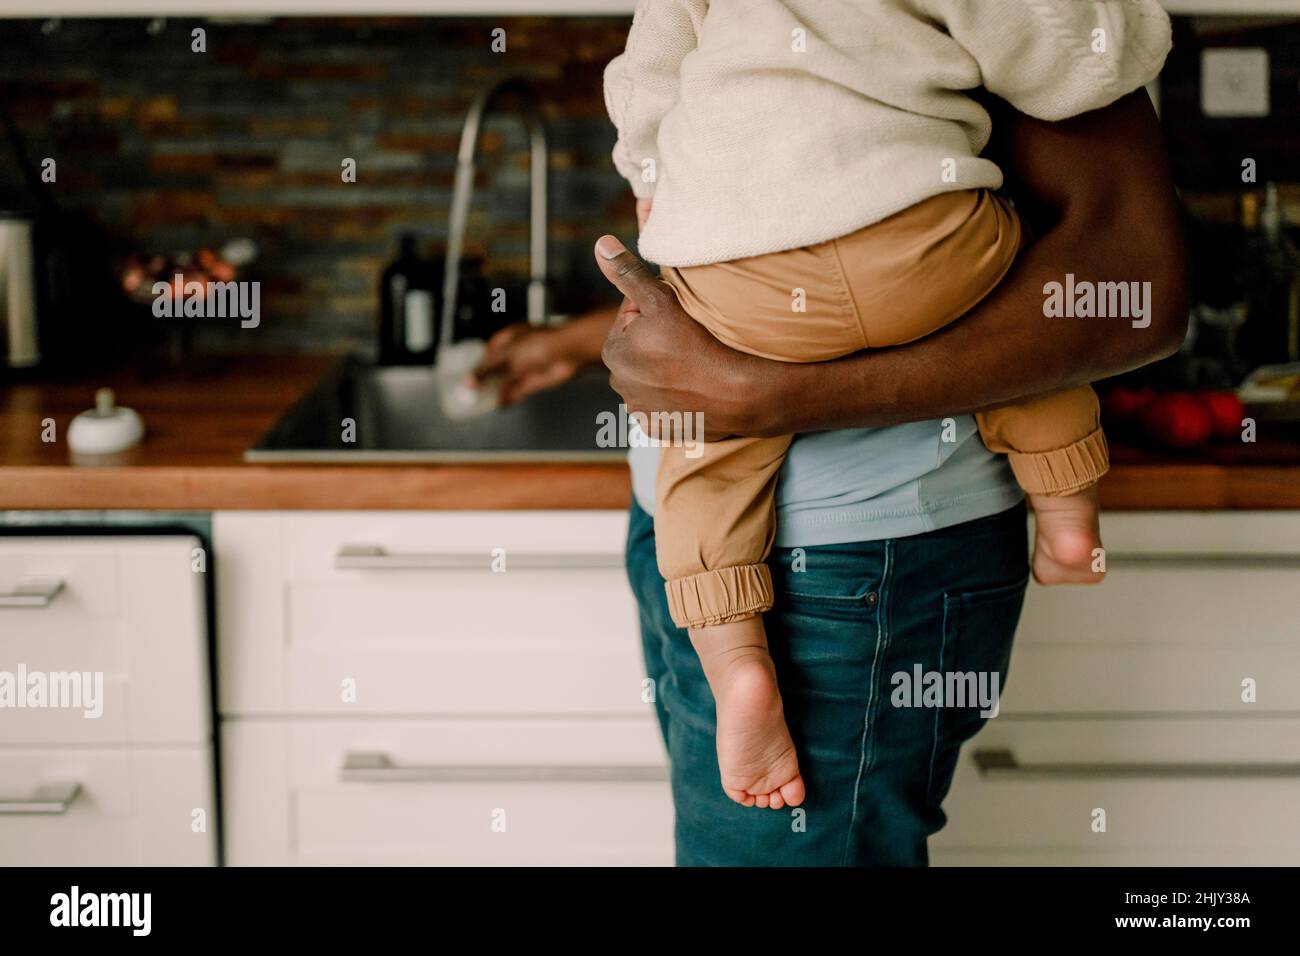 Mittelteil des Vaters, der einen kleinen Jungen trägt, während er in der Küche Aufgaben erledigt Stockfoto